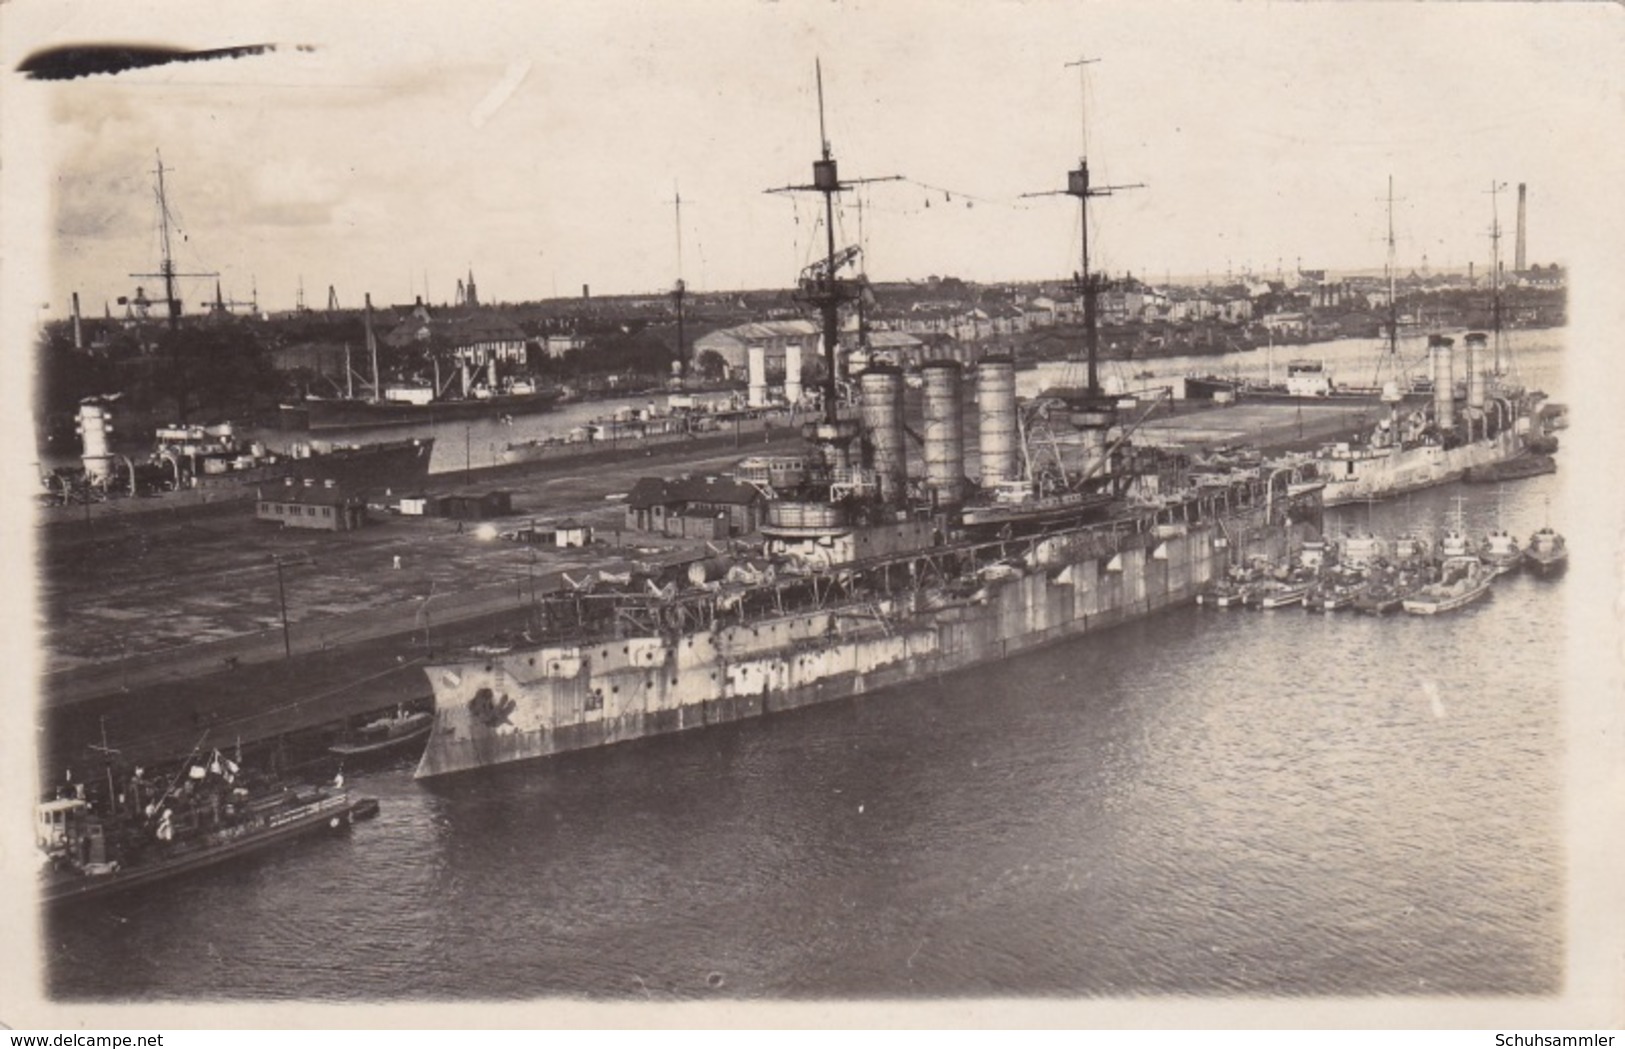 Alte Ansichtskarte Des Minensuchschiffs "Preussen" Im Hafen Von Wilhelmshaven - Krieg